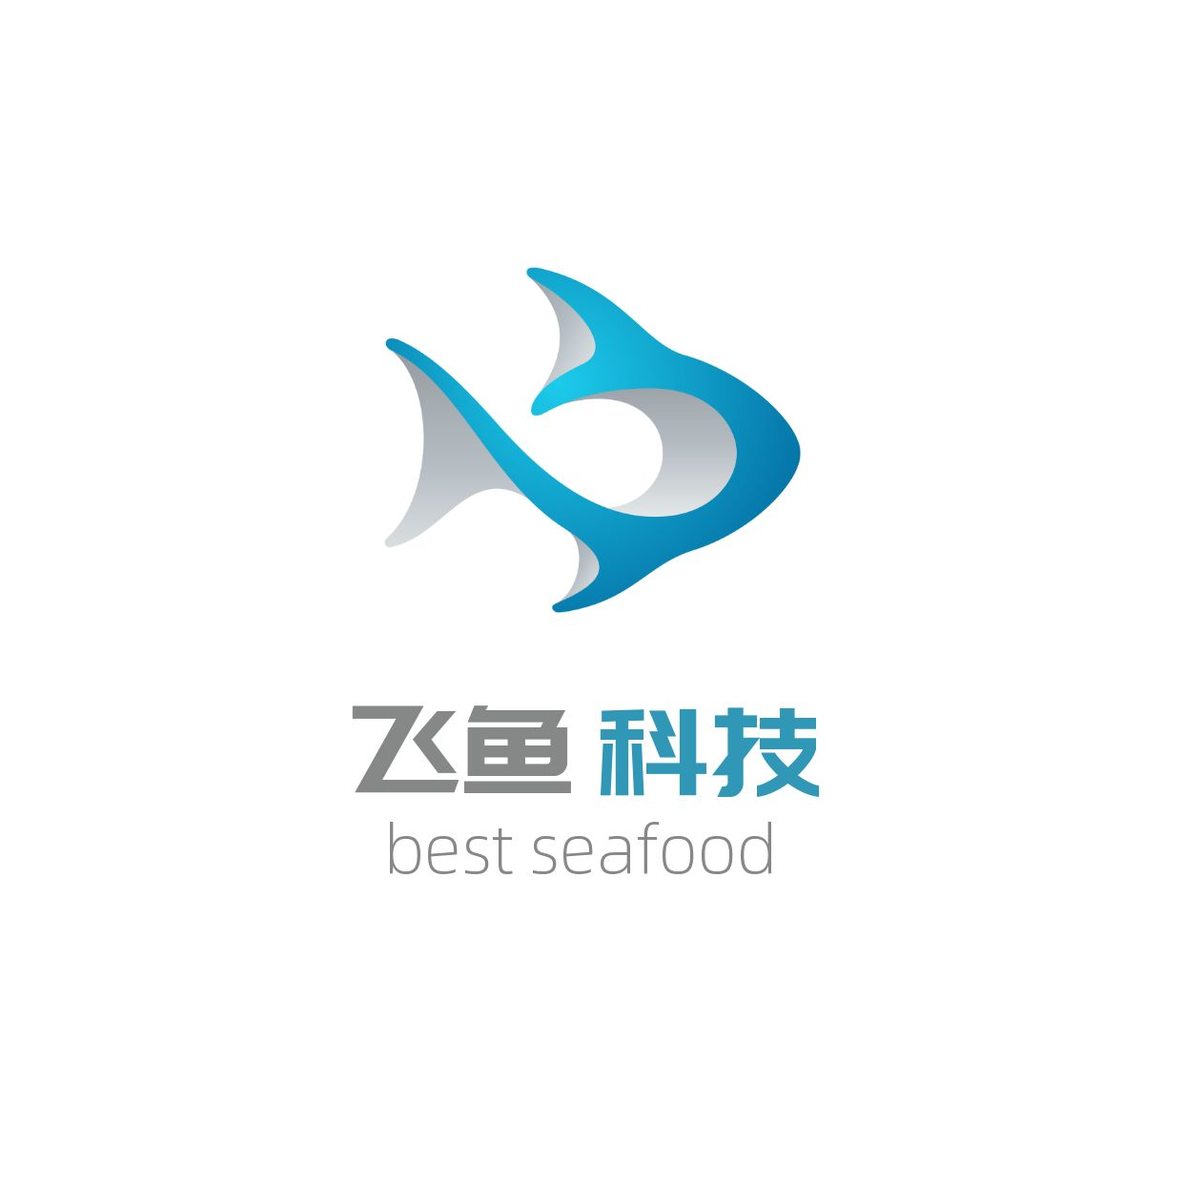 logo鱼类标志 3d 抽象设计矢量模板